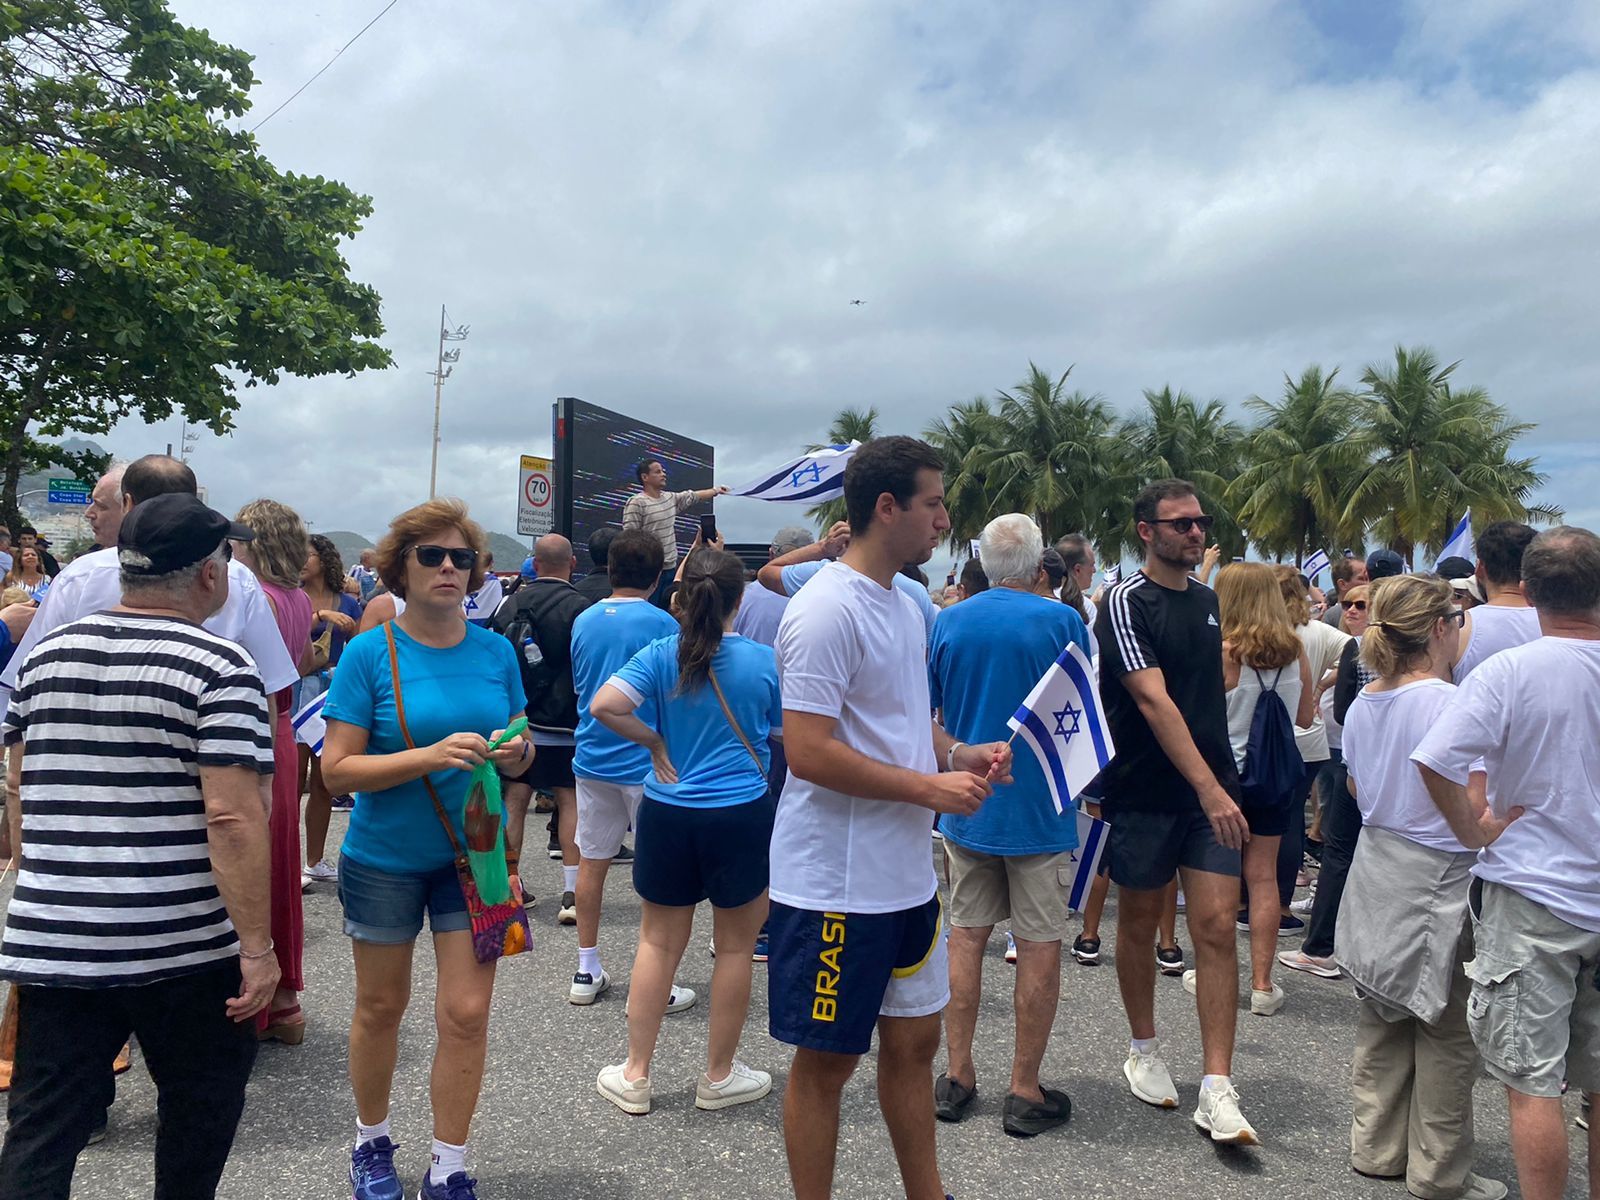 FIERJ celebra 70 anos e participa da Caminhada em Copacabana – B